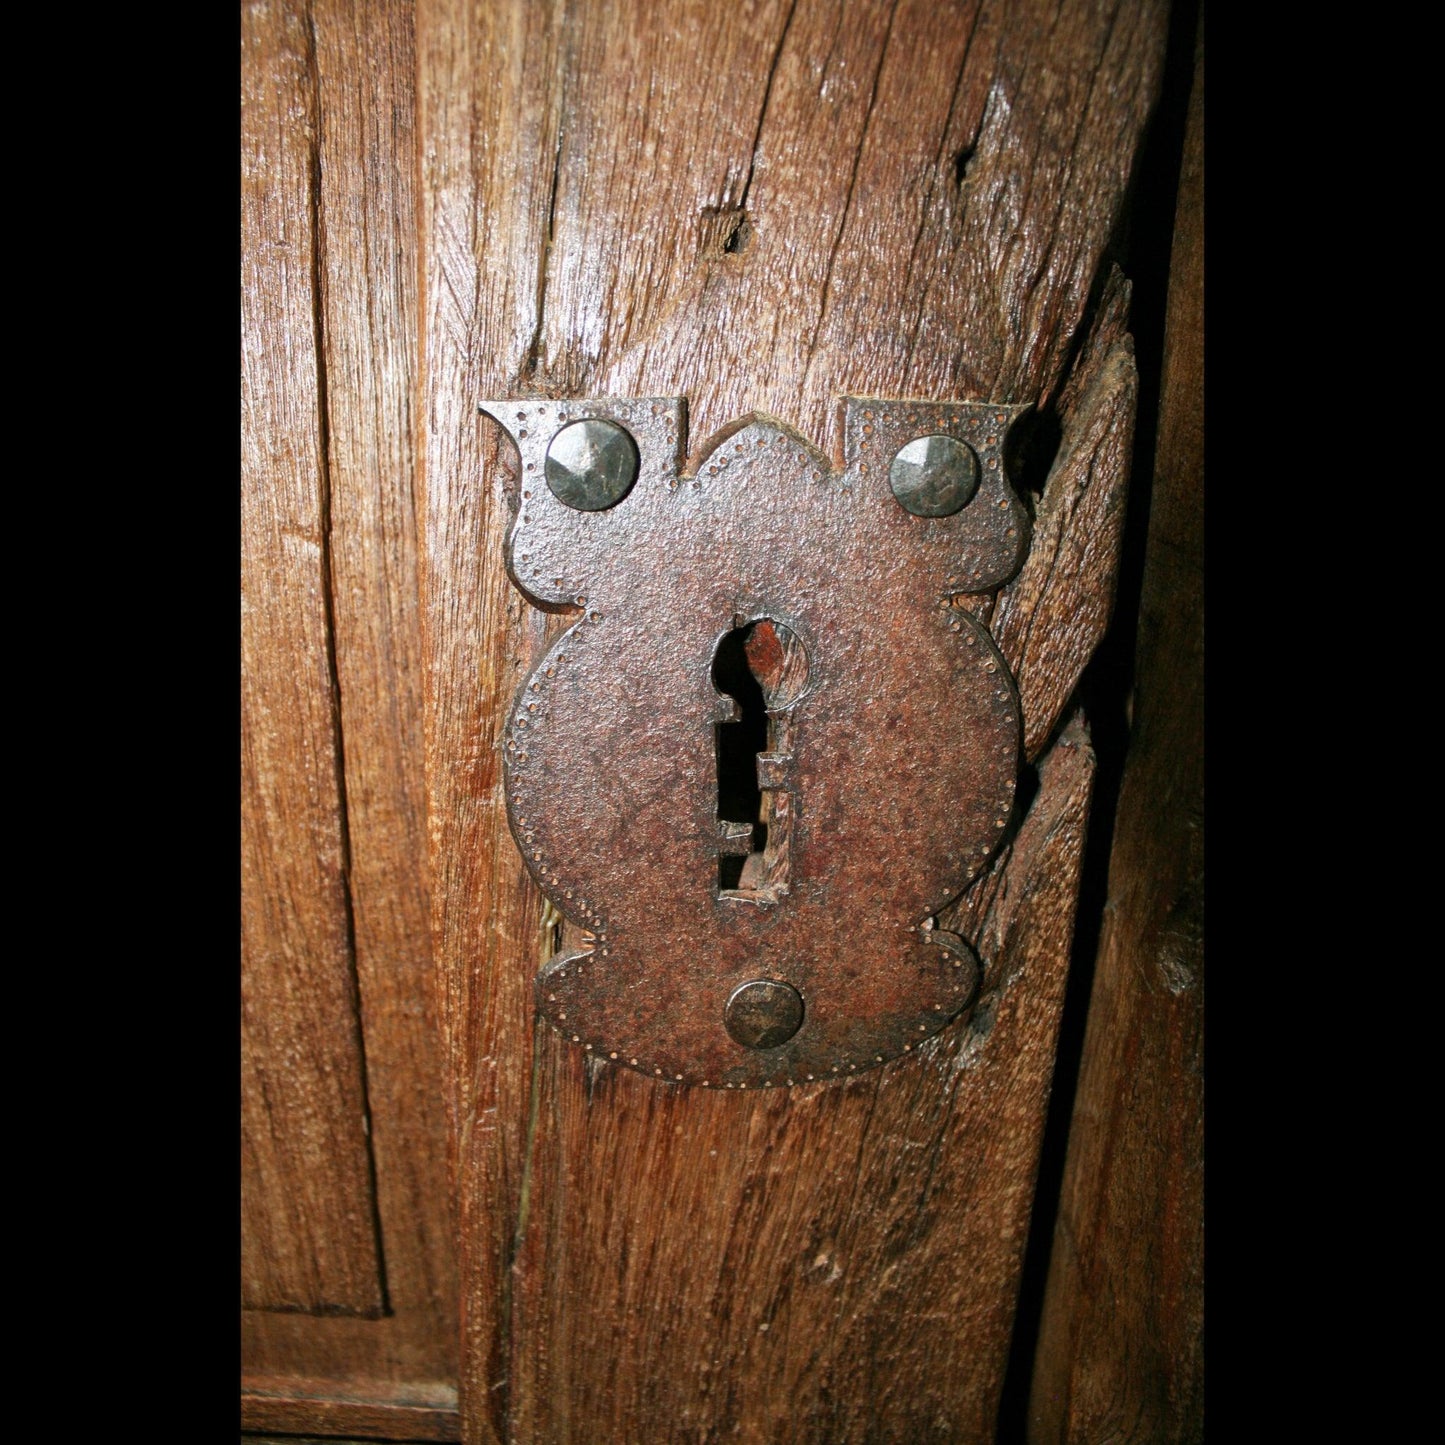 old-door-hardware-v-isenhower-photography - V. Isenhower Photography